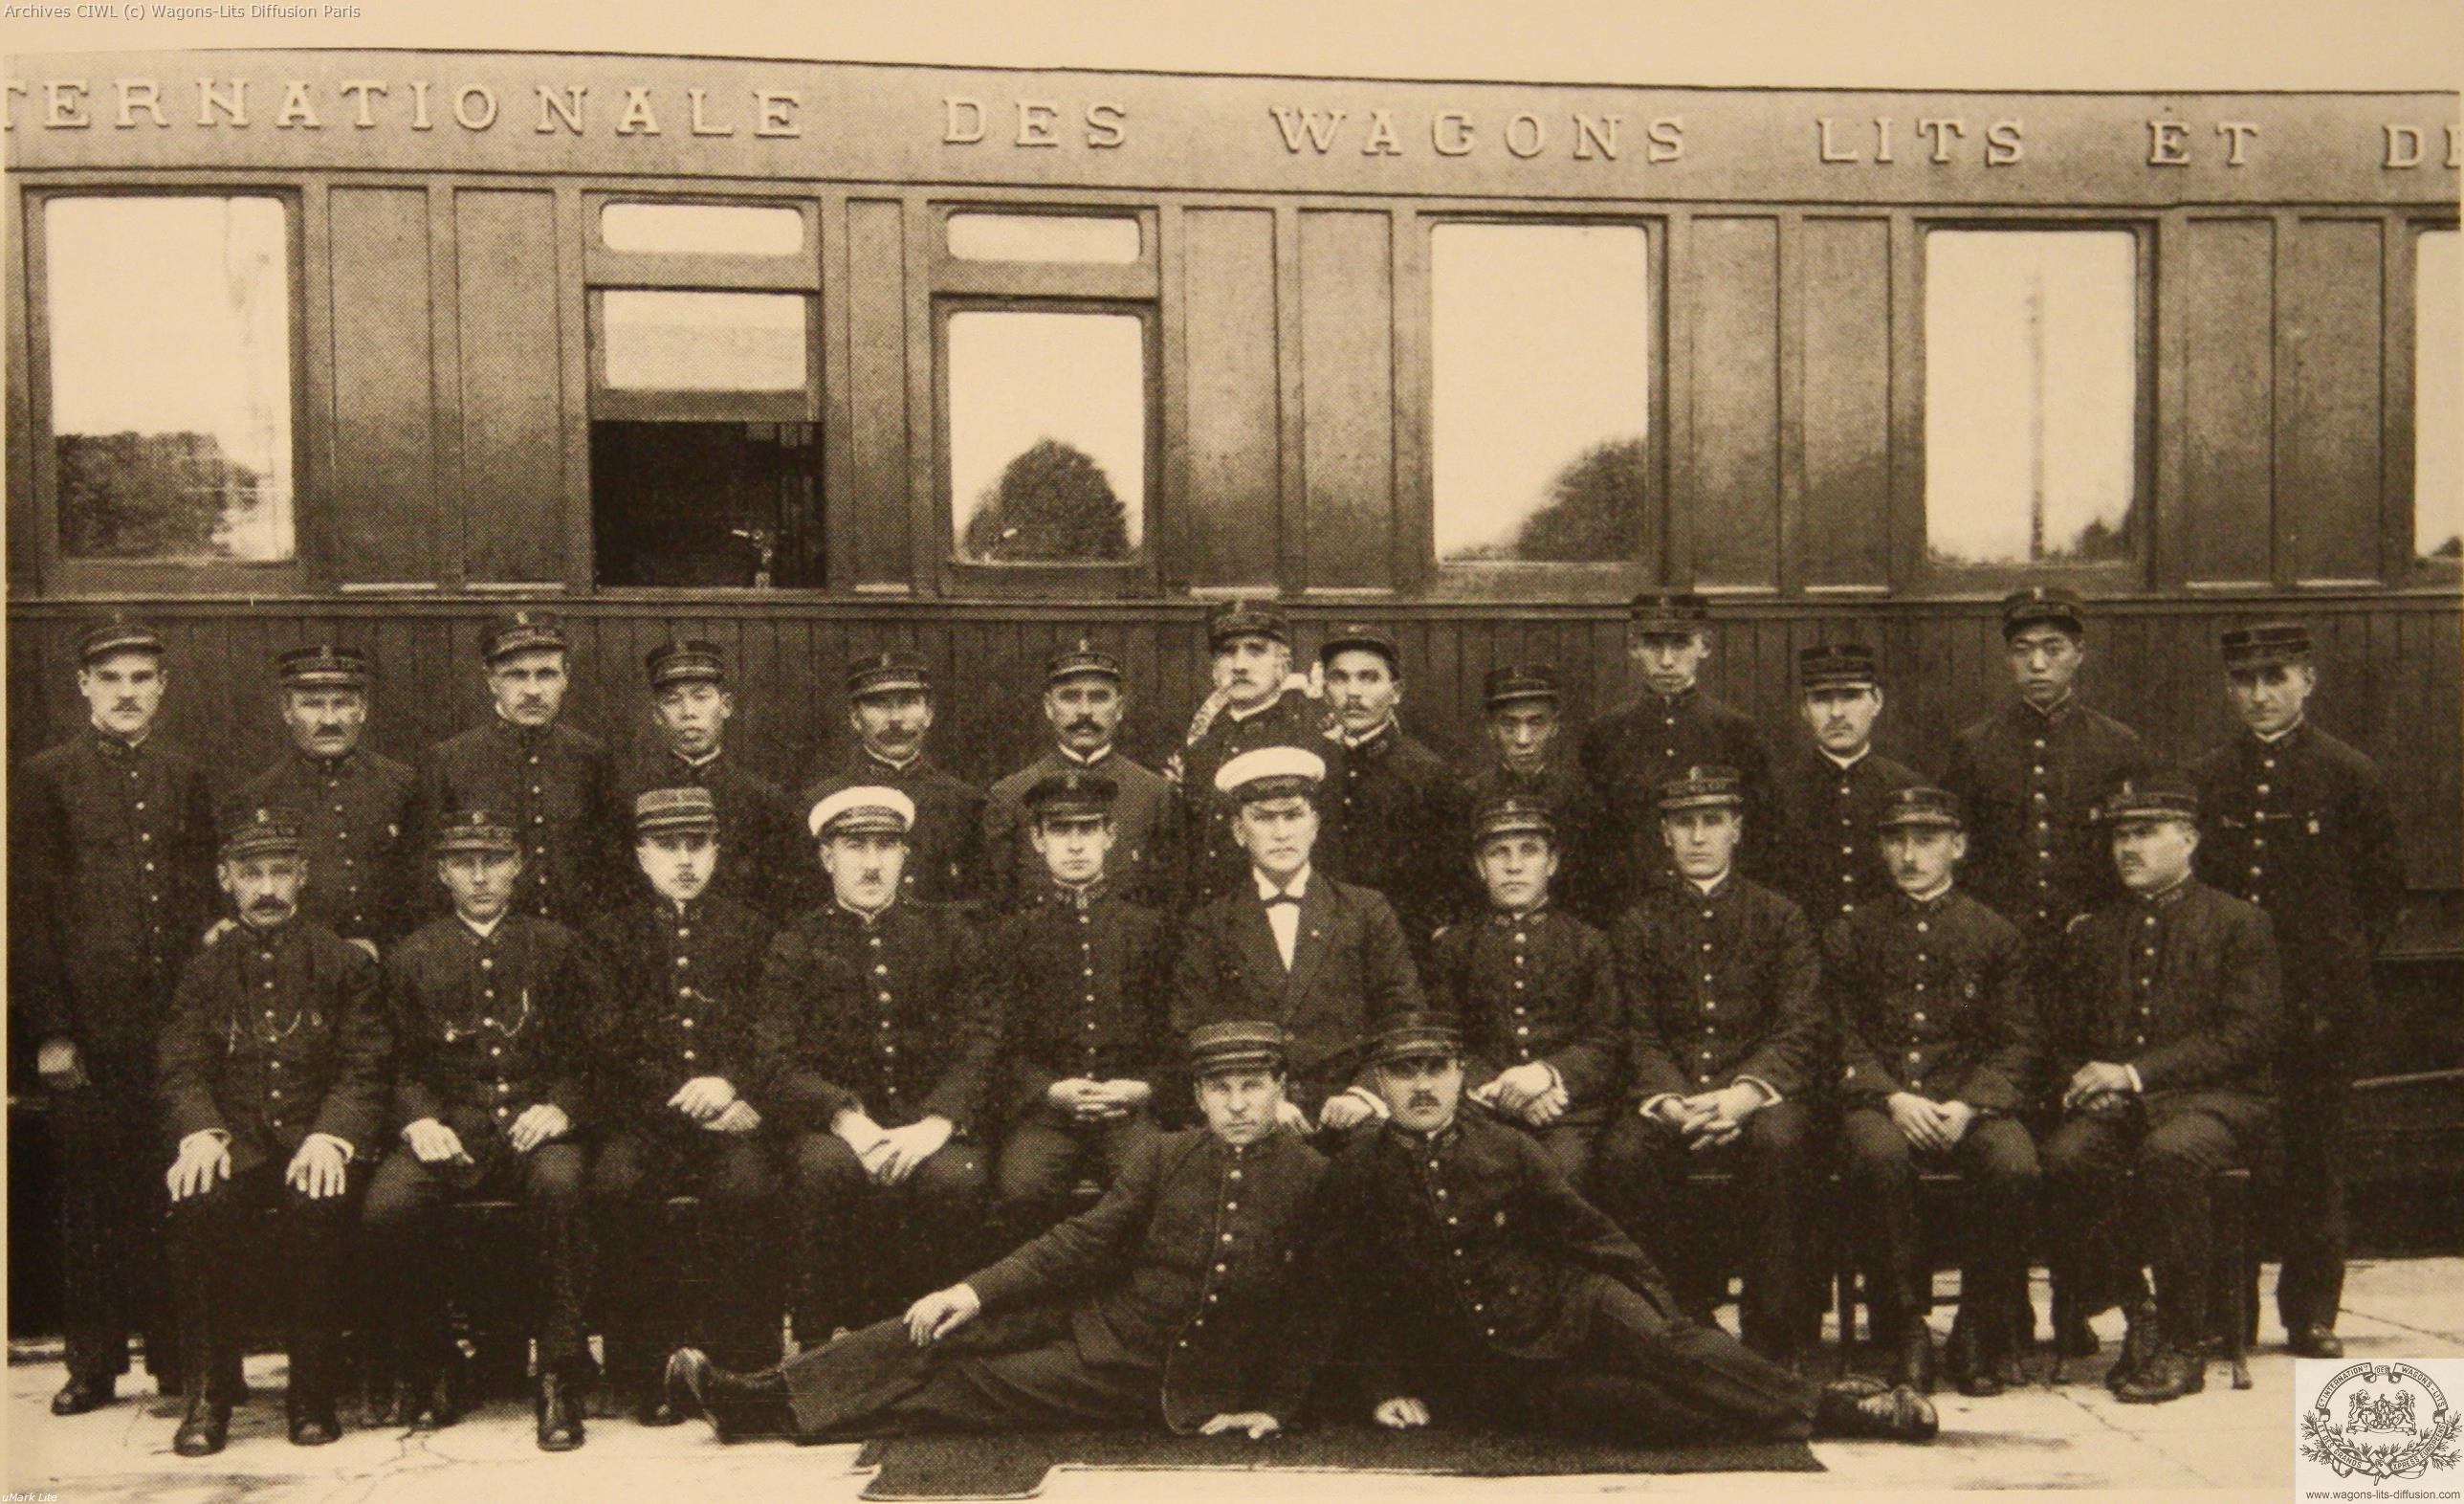 Wl brigade ciwl en mandchourie 1909